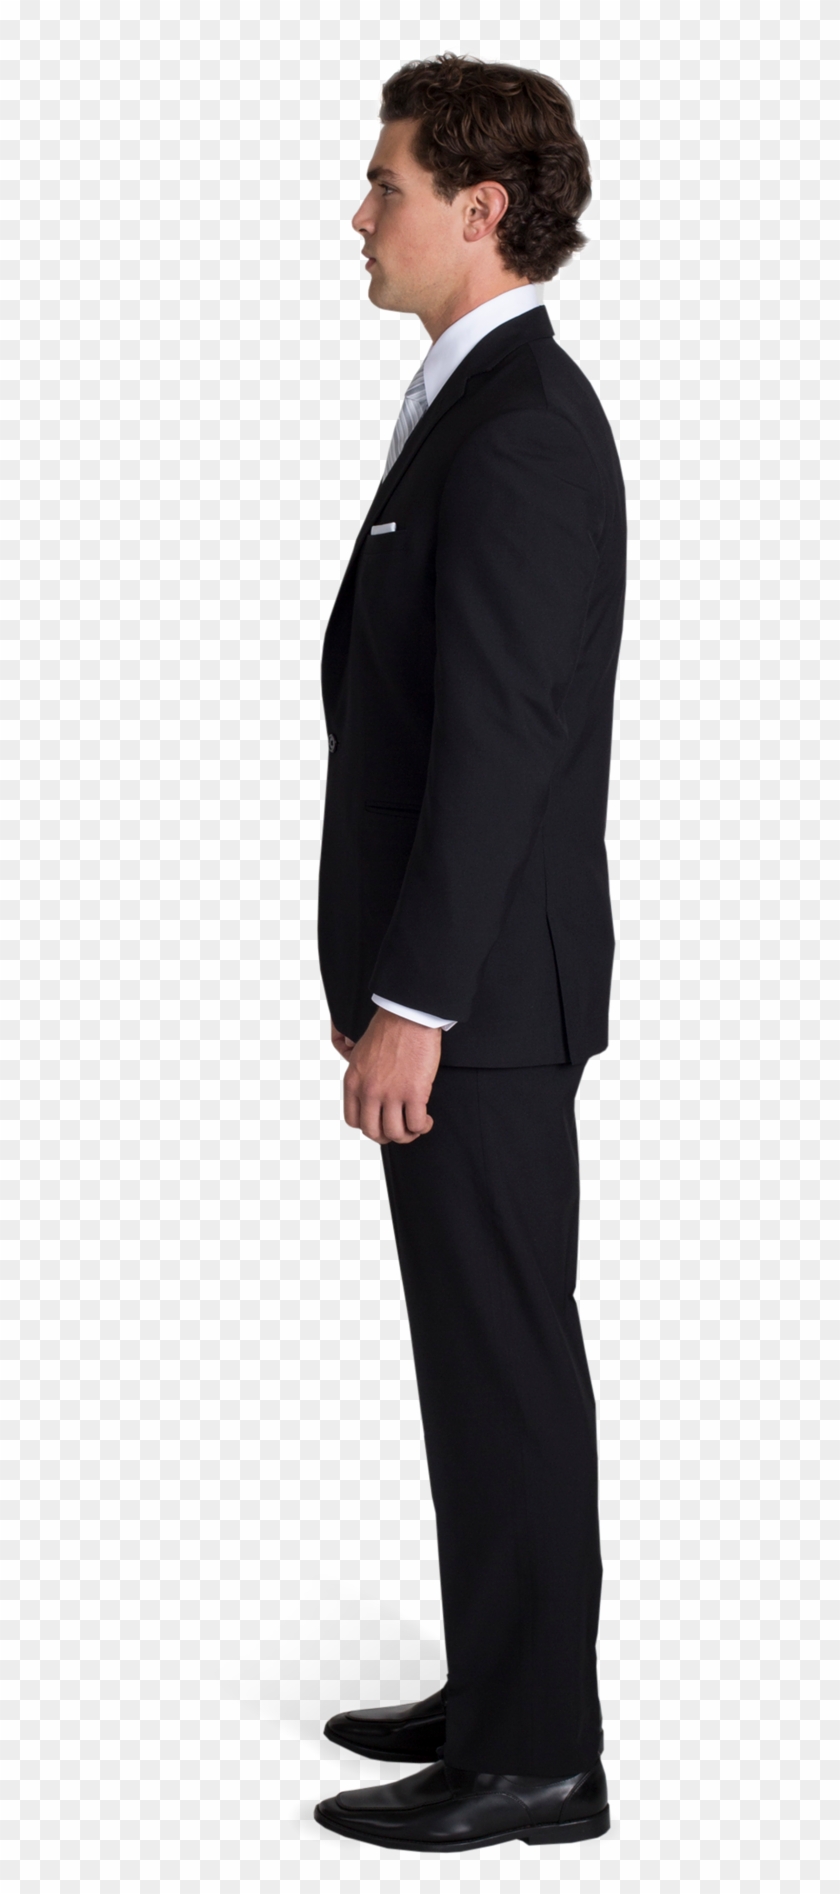 Black Notch Lapel Suit With Silver Tie - Man Black Suit Side Clipart #823070